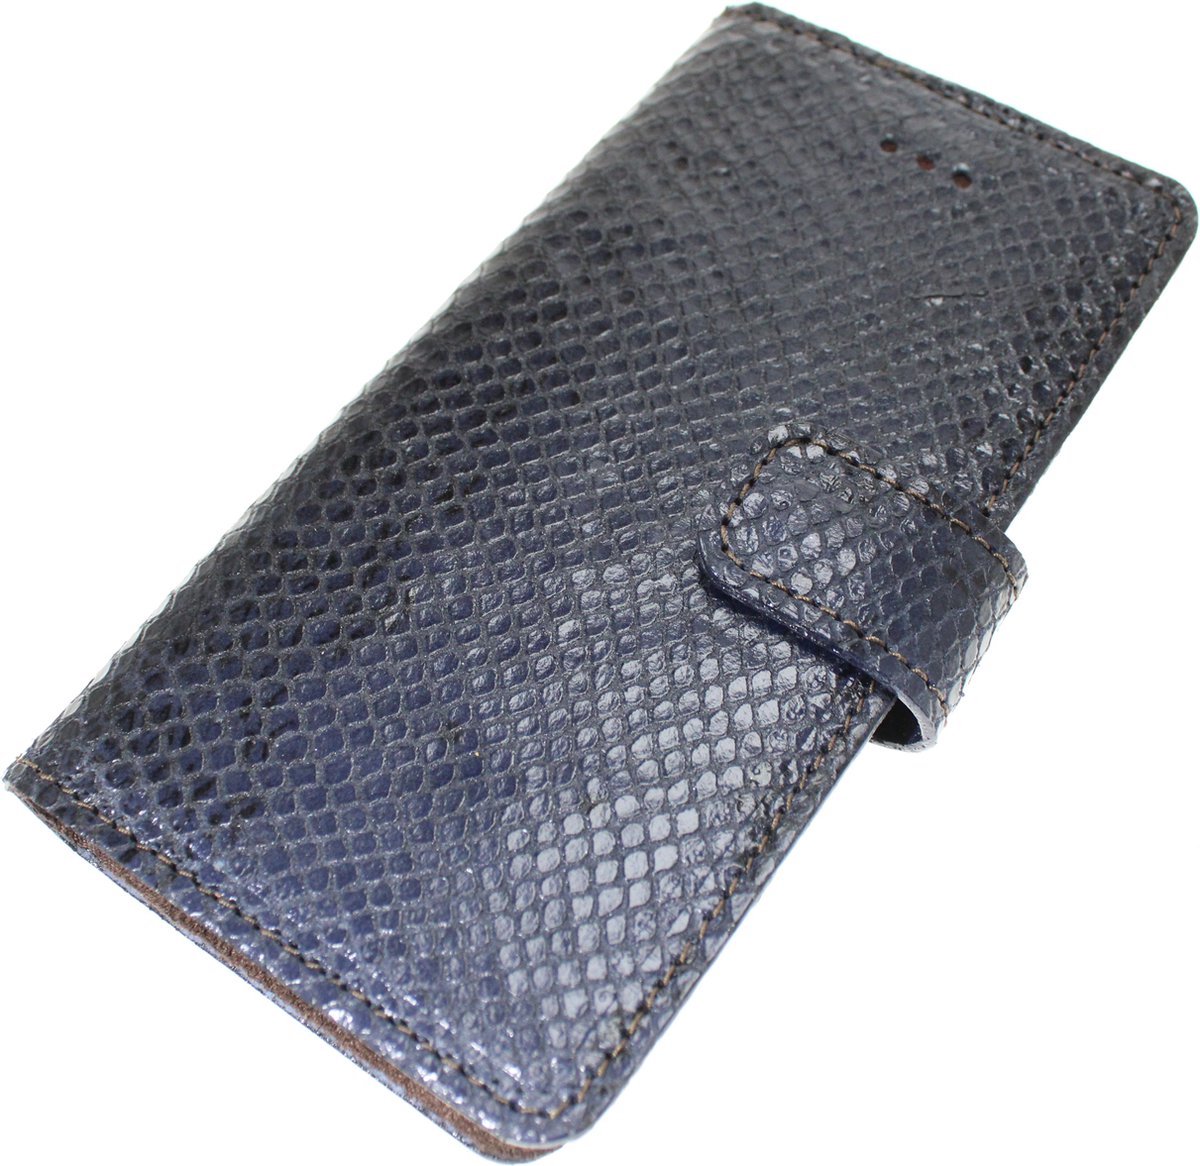 Made-NL Handgemaakte ( Samsung Galaxy A51 ) book case Zwart/blauw slangenprint reliëf kalfsleer